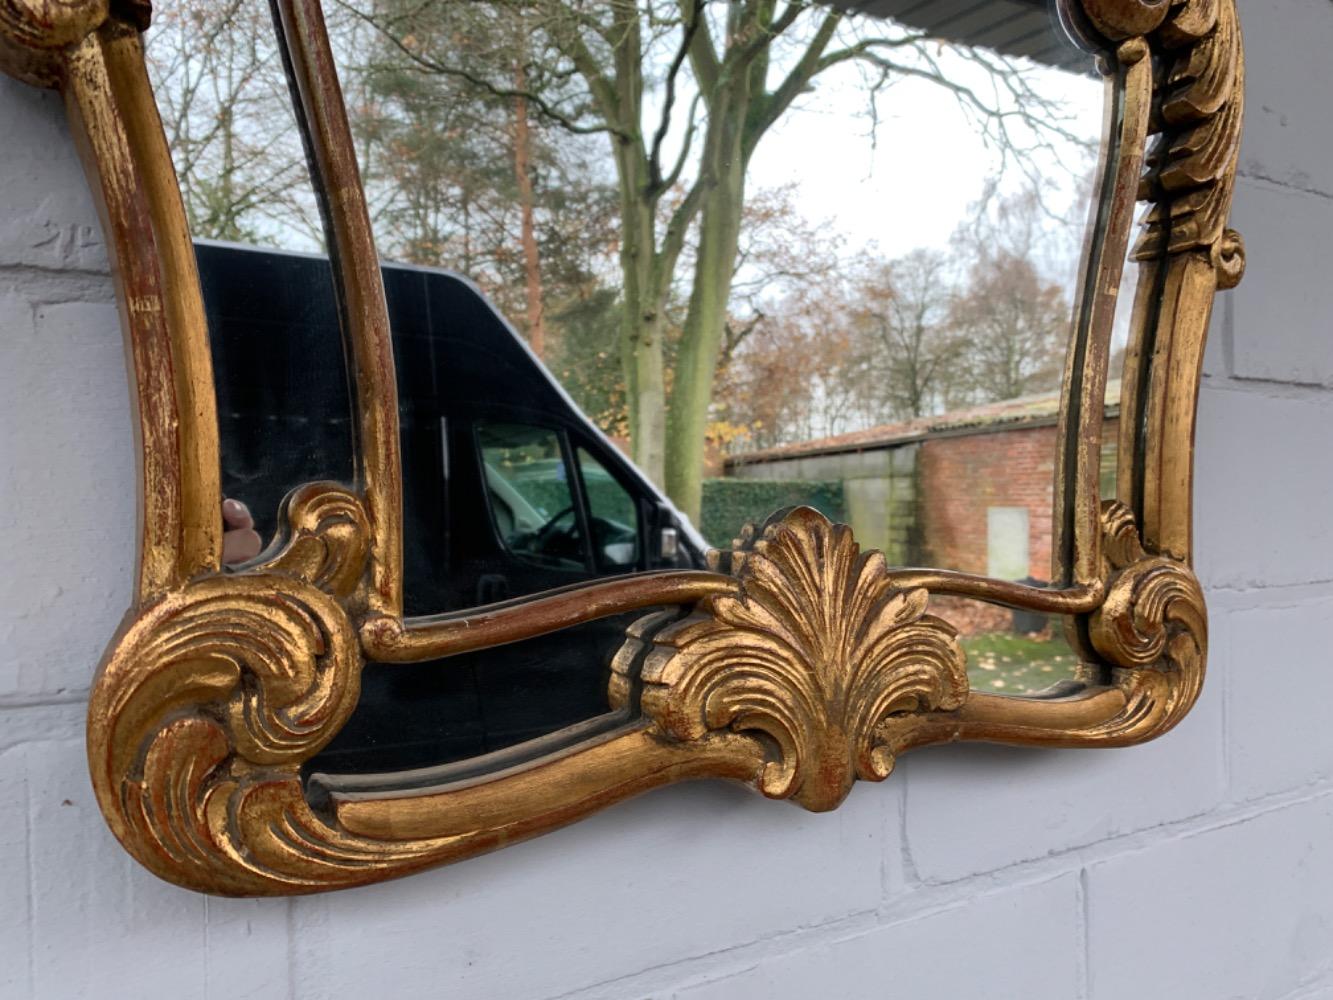 Louis XV style Mirror